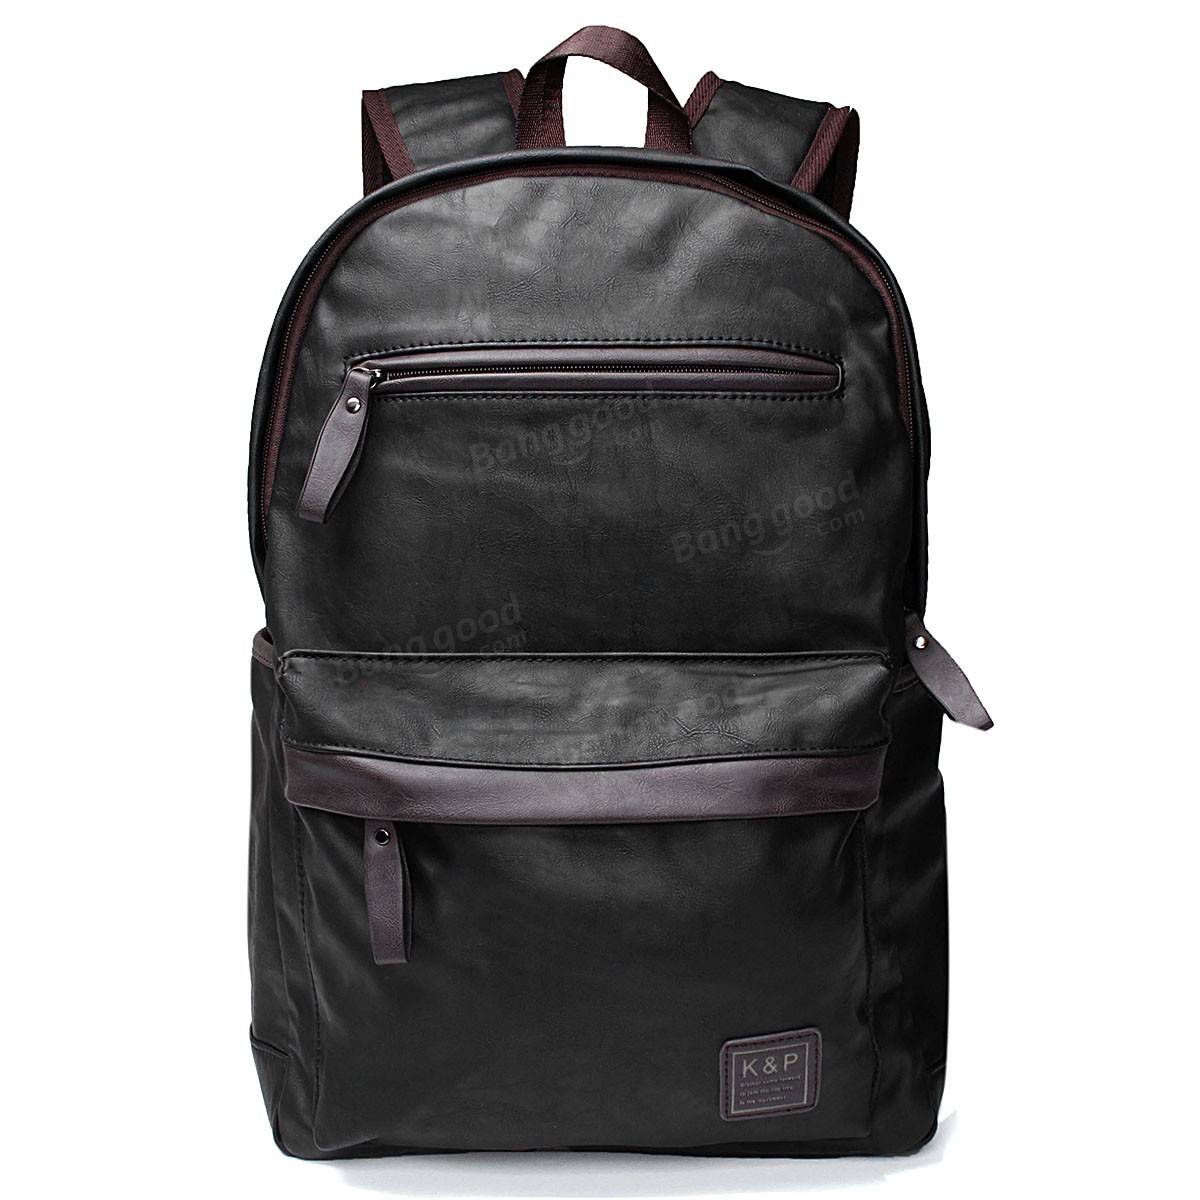 Mens Leather Laptop Hiking Backpack Rucksack Shoulder Travel School Bag Sale - www.semadata.org